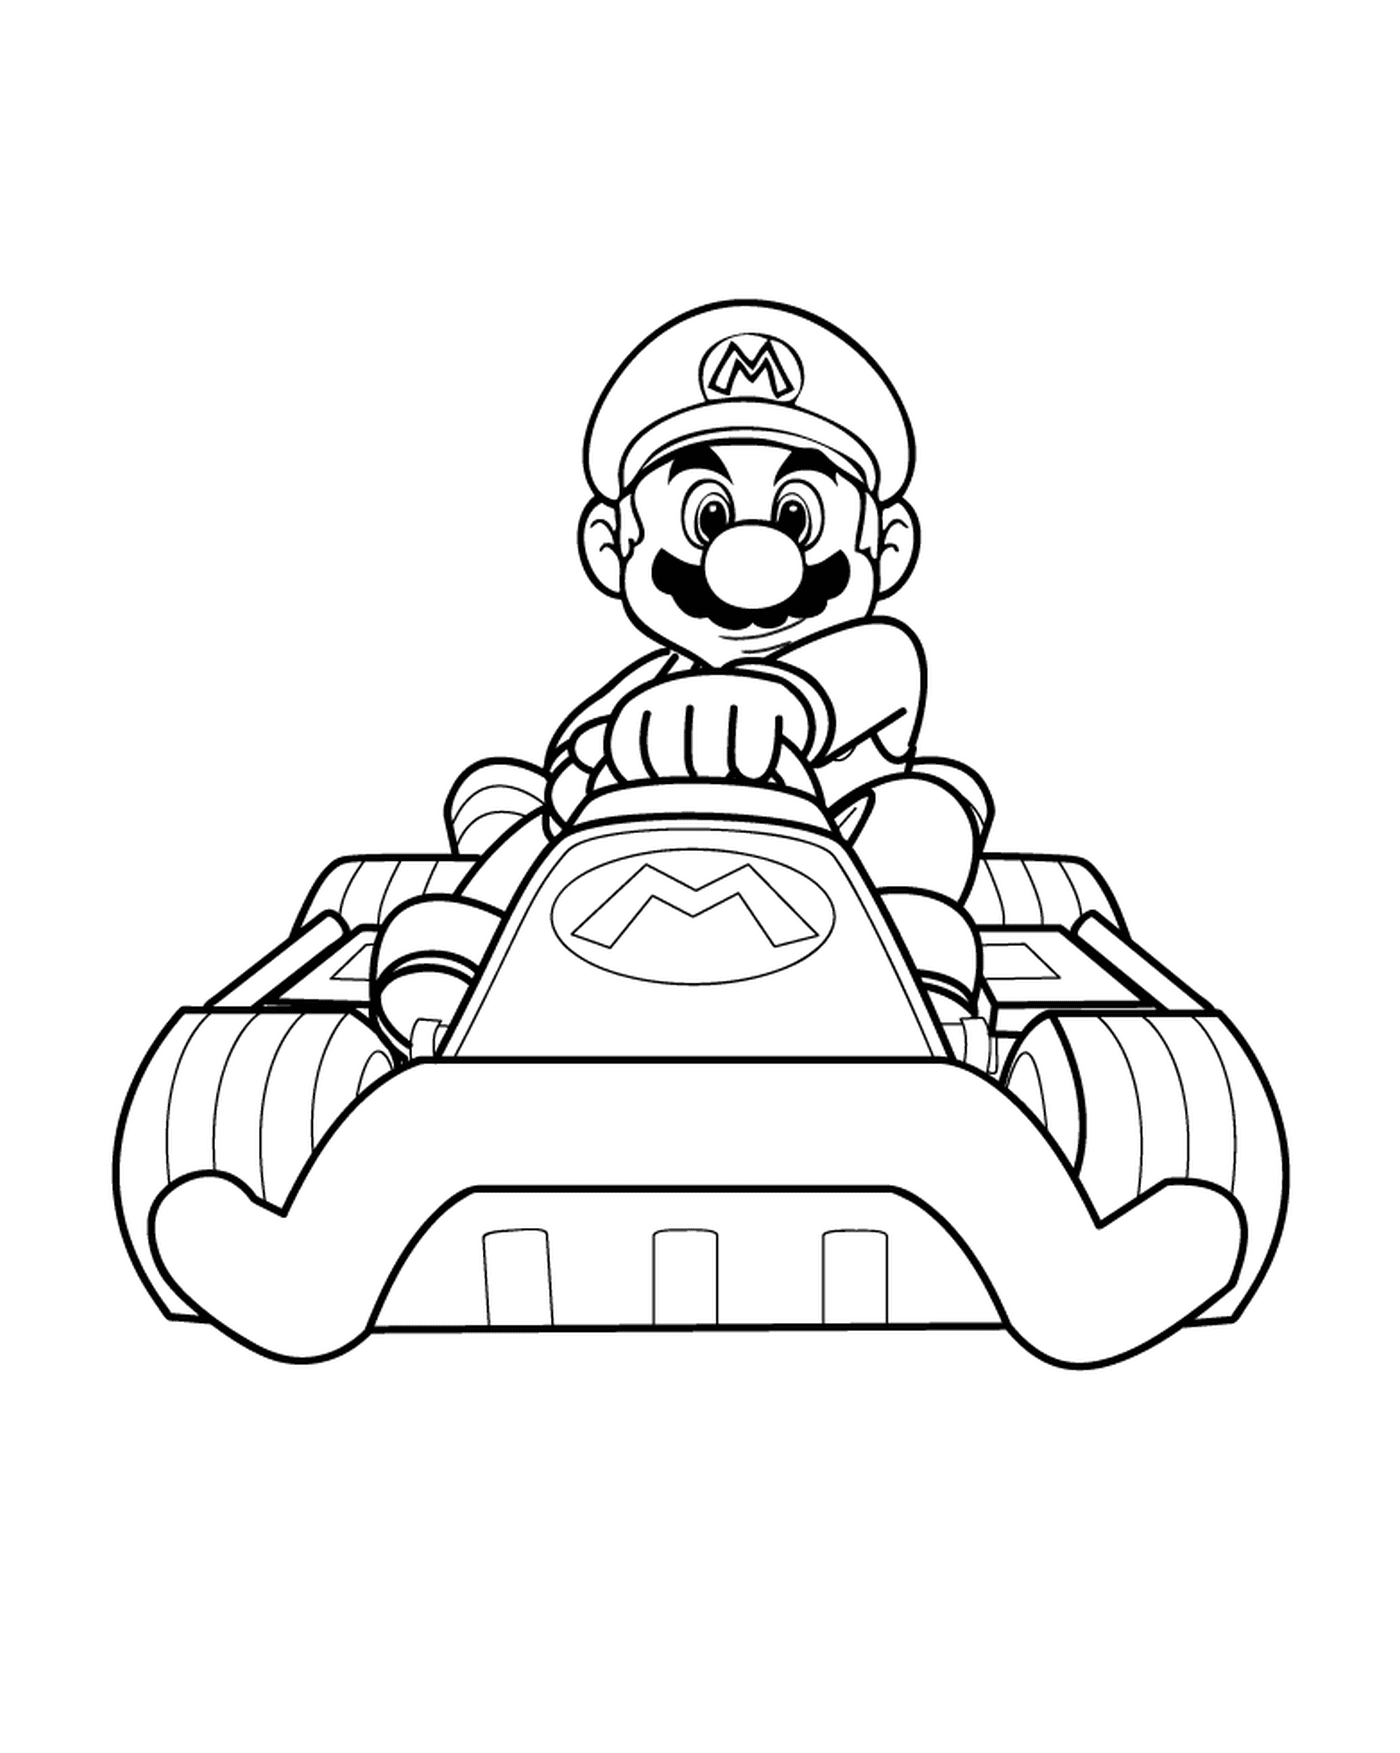  Mario Kart for Boy 